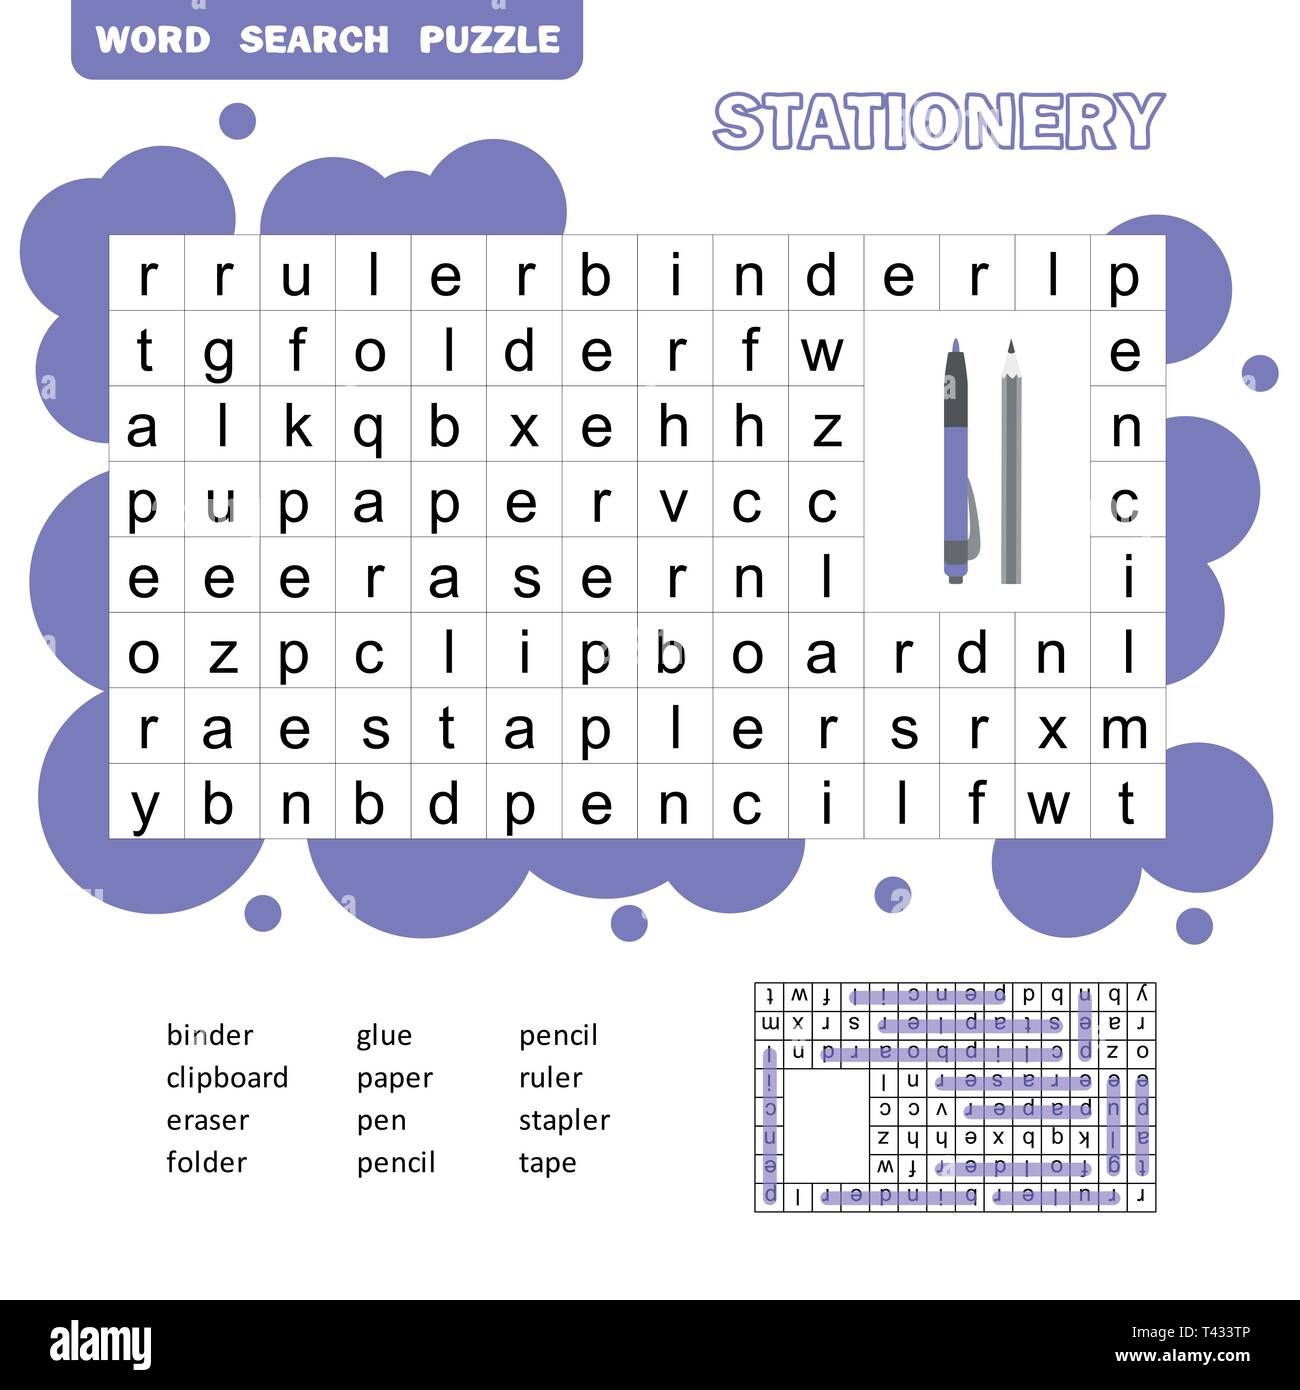 Crossword Game über Schule für Kinder, Word Search Puzzle mit Vokabular und die Antwort, cartoon Flat Style, Illustration, Vektor Stock Vektor